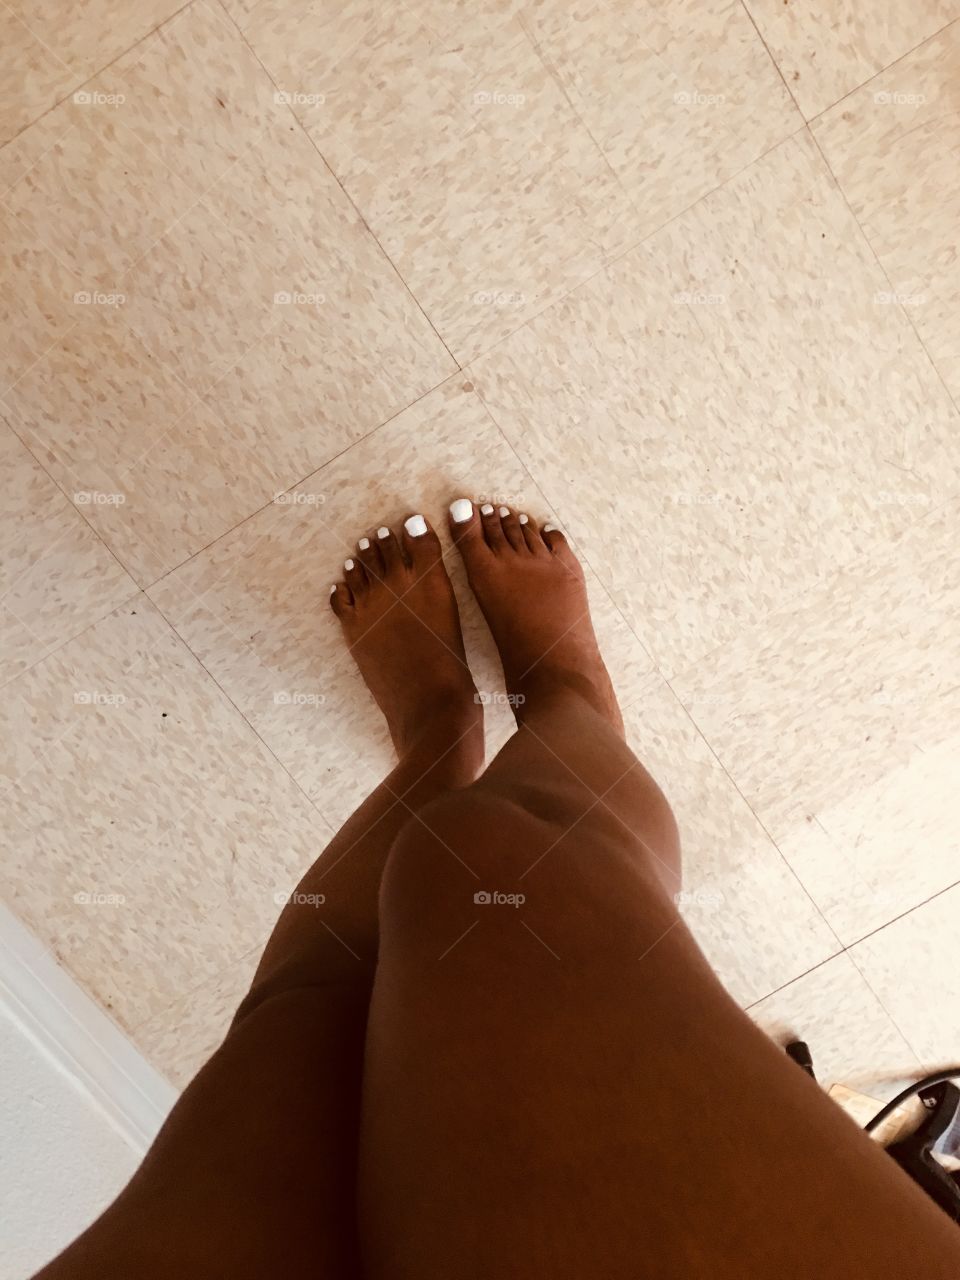 Freshly painted toes 😌